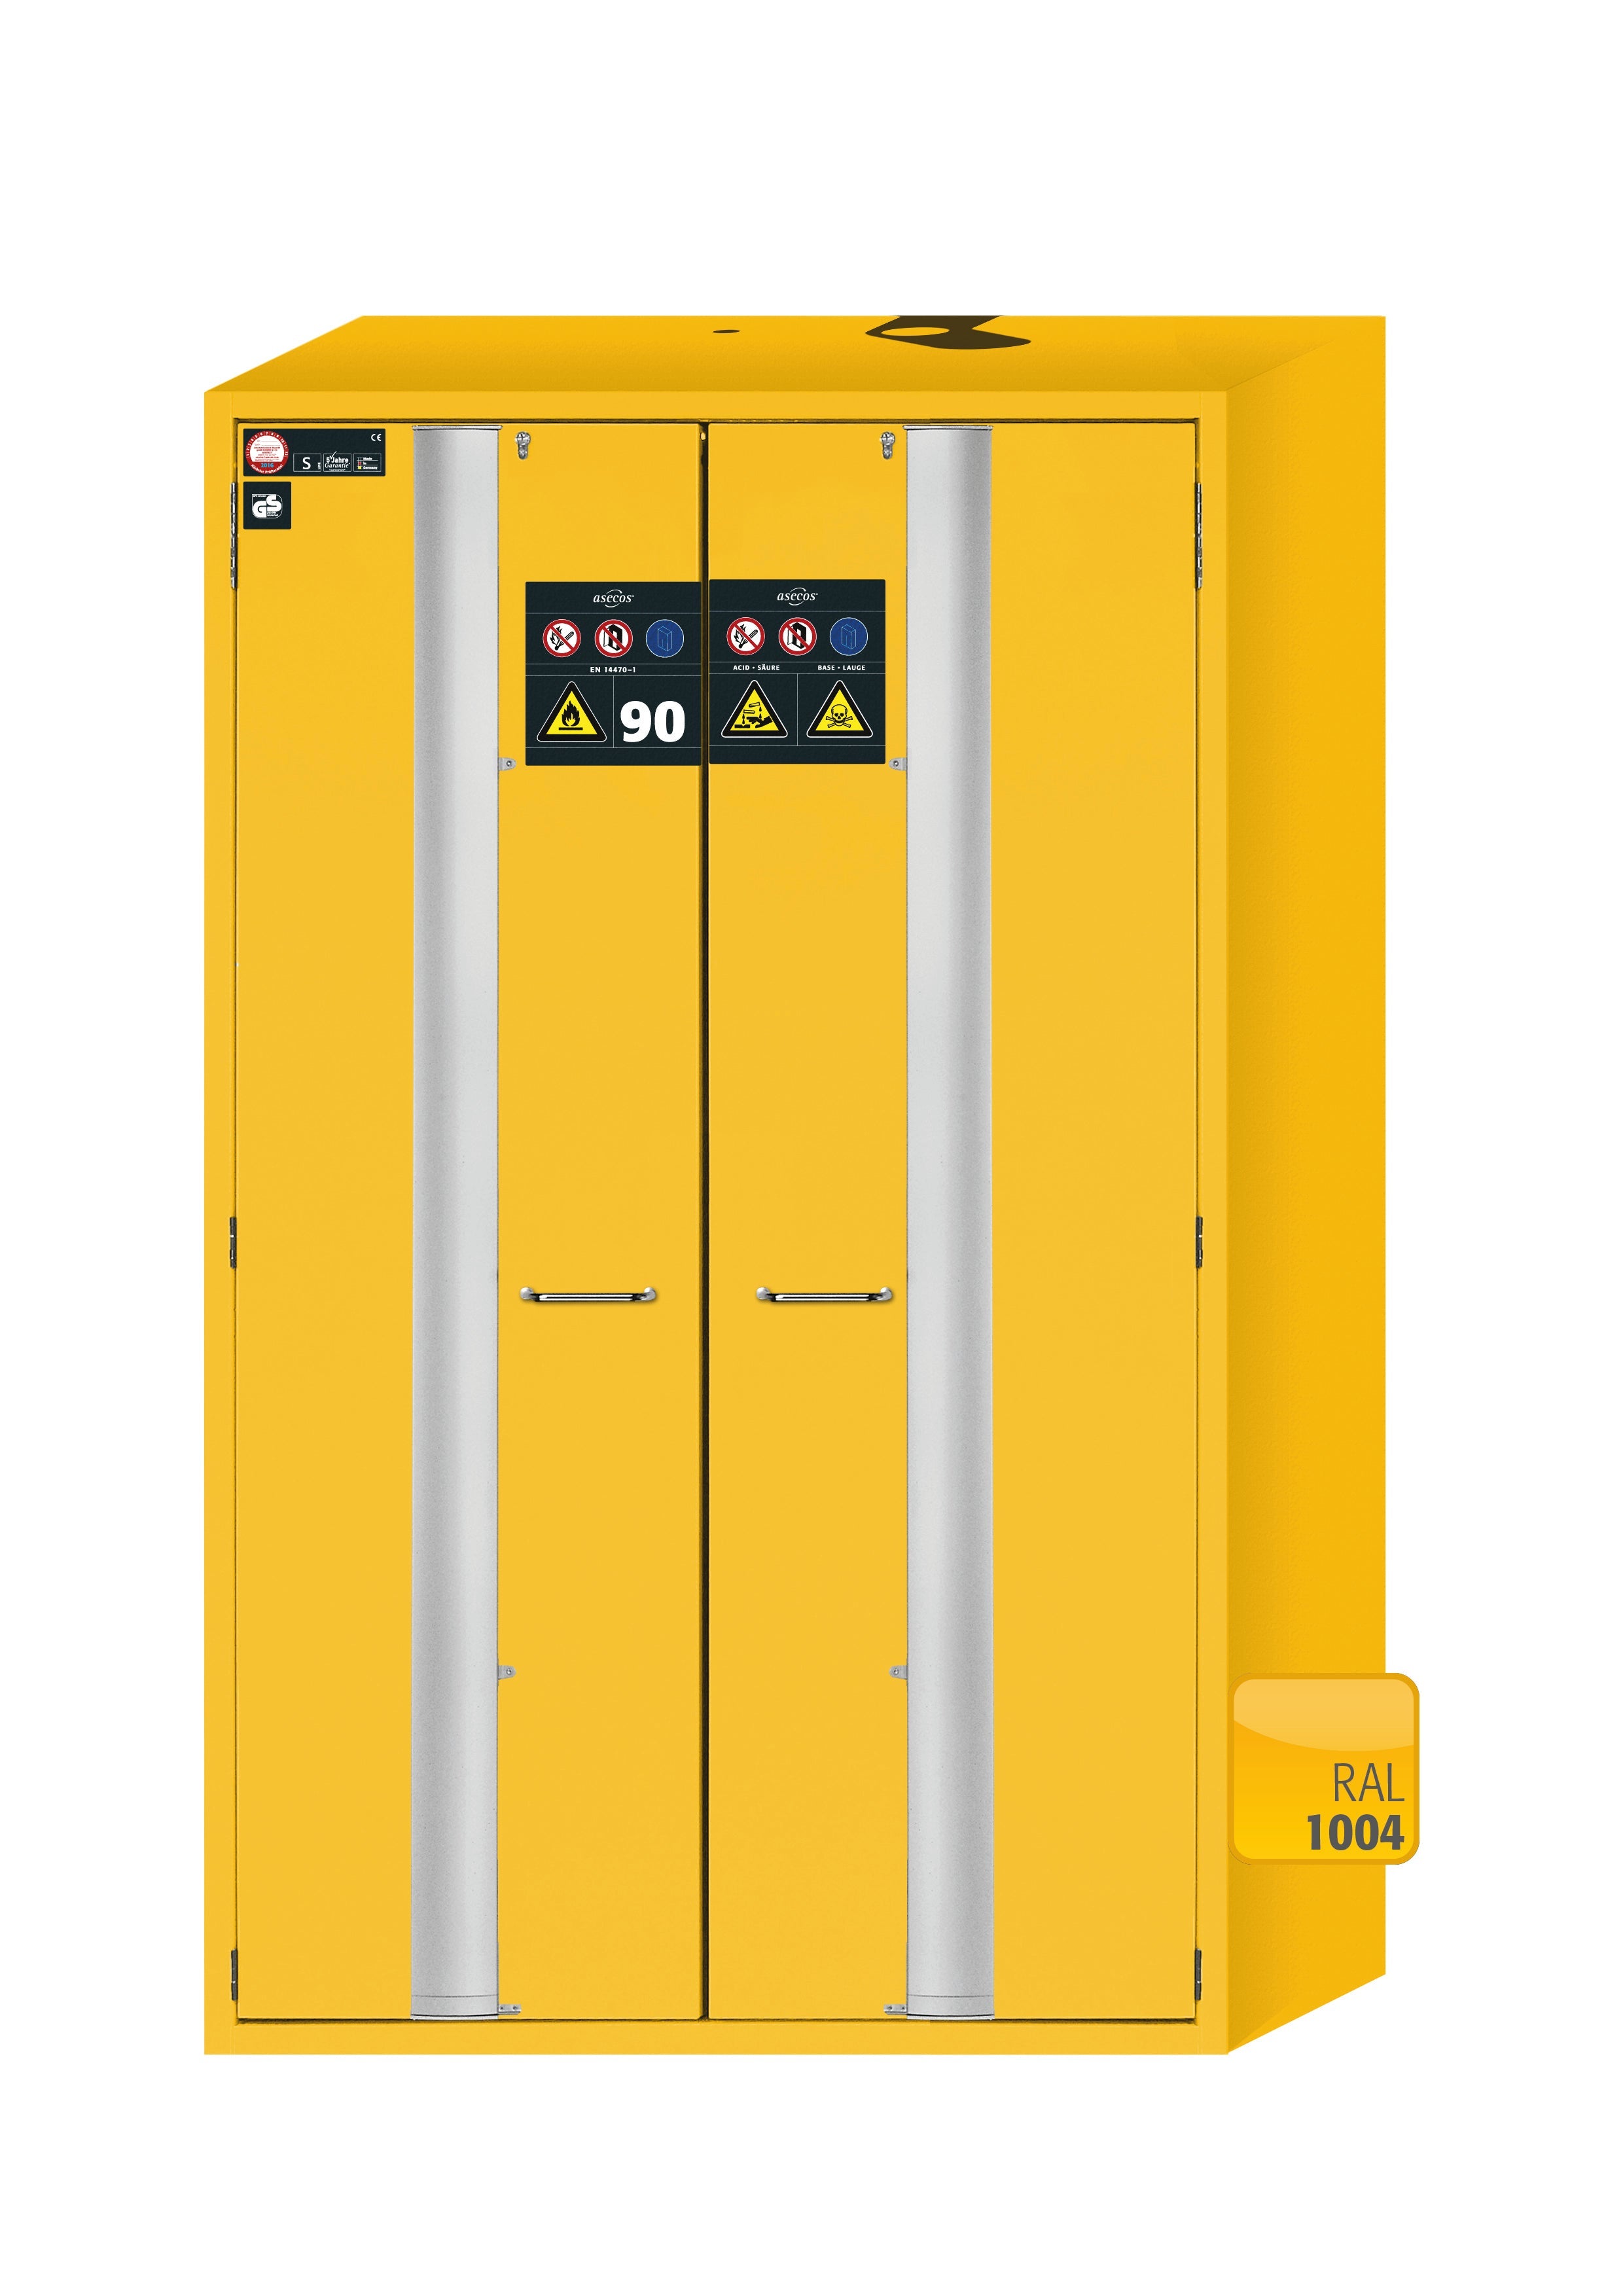 Armoire de sécurité type 90 S-PHOENIX-90 modèle S90.196.120.MV.FDAS en jaune de sécurité RAL 1004 avec 3 étagères standard (acier inoxydable 1.4301)